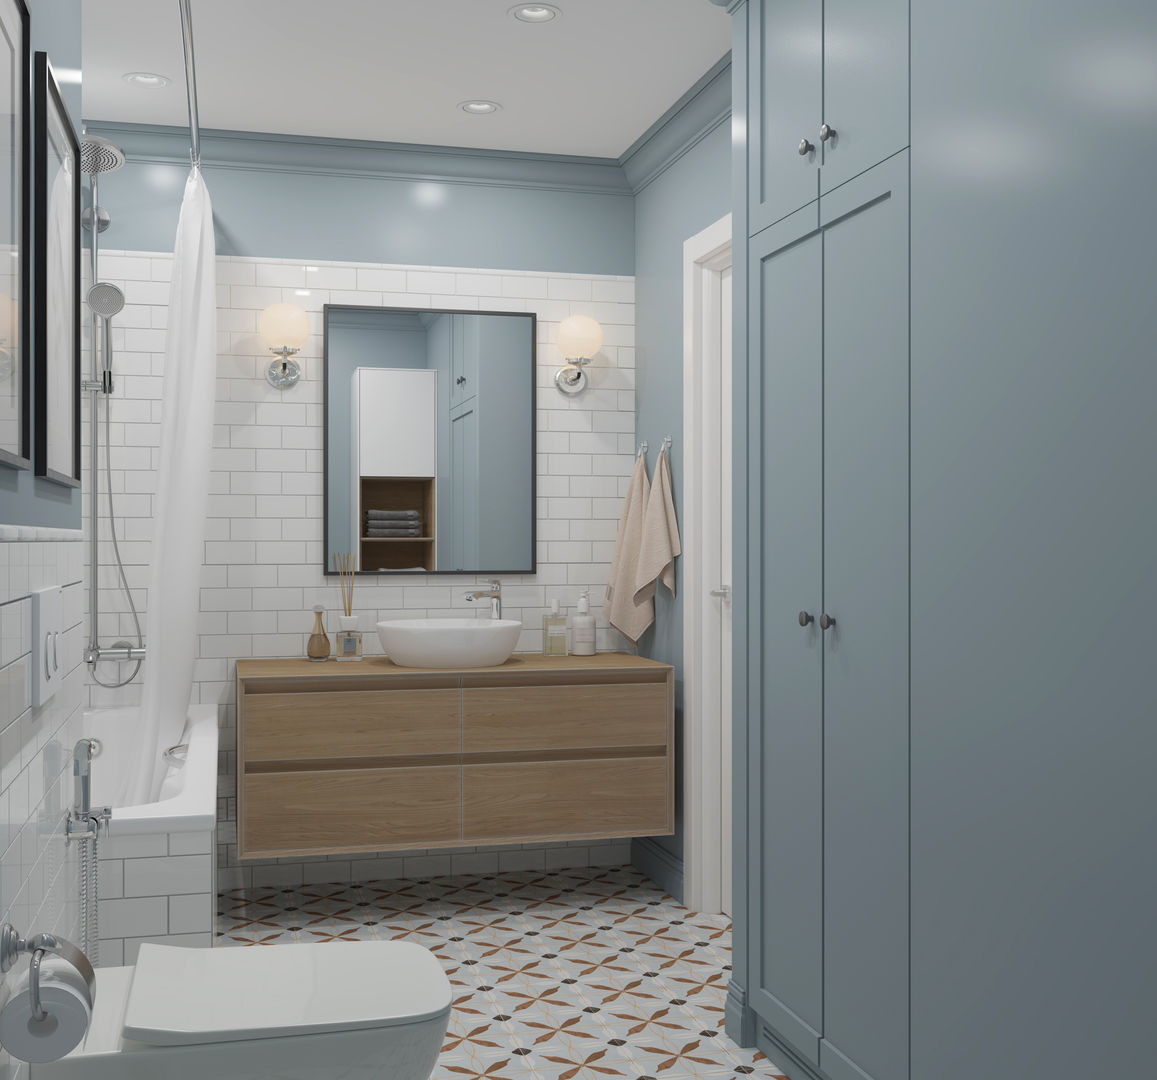 ЖК "Татьянин Парк", двухкомнатная квартира для молодой семьи, OM DESIGN OM DESIGN Scandinavian style bathrooms